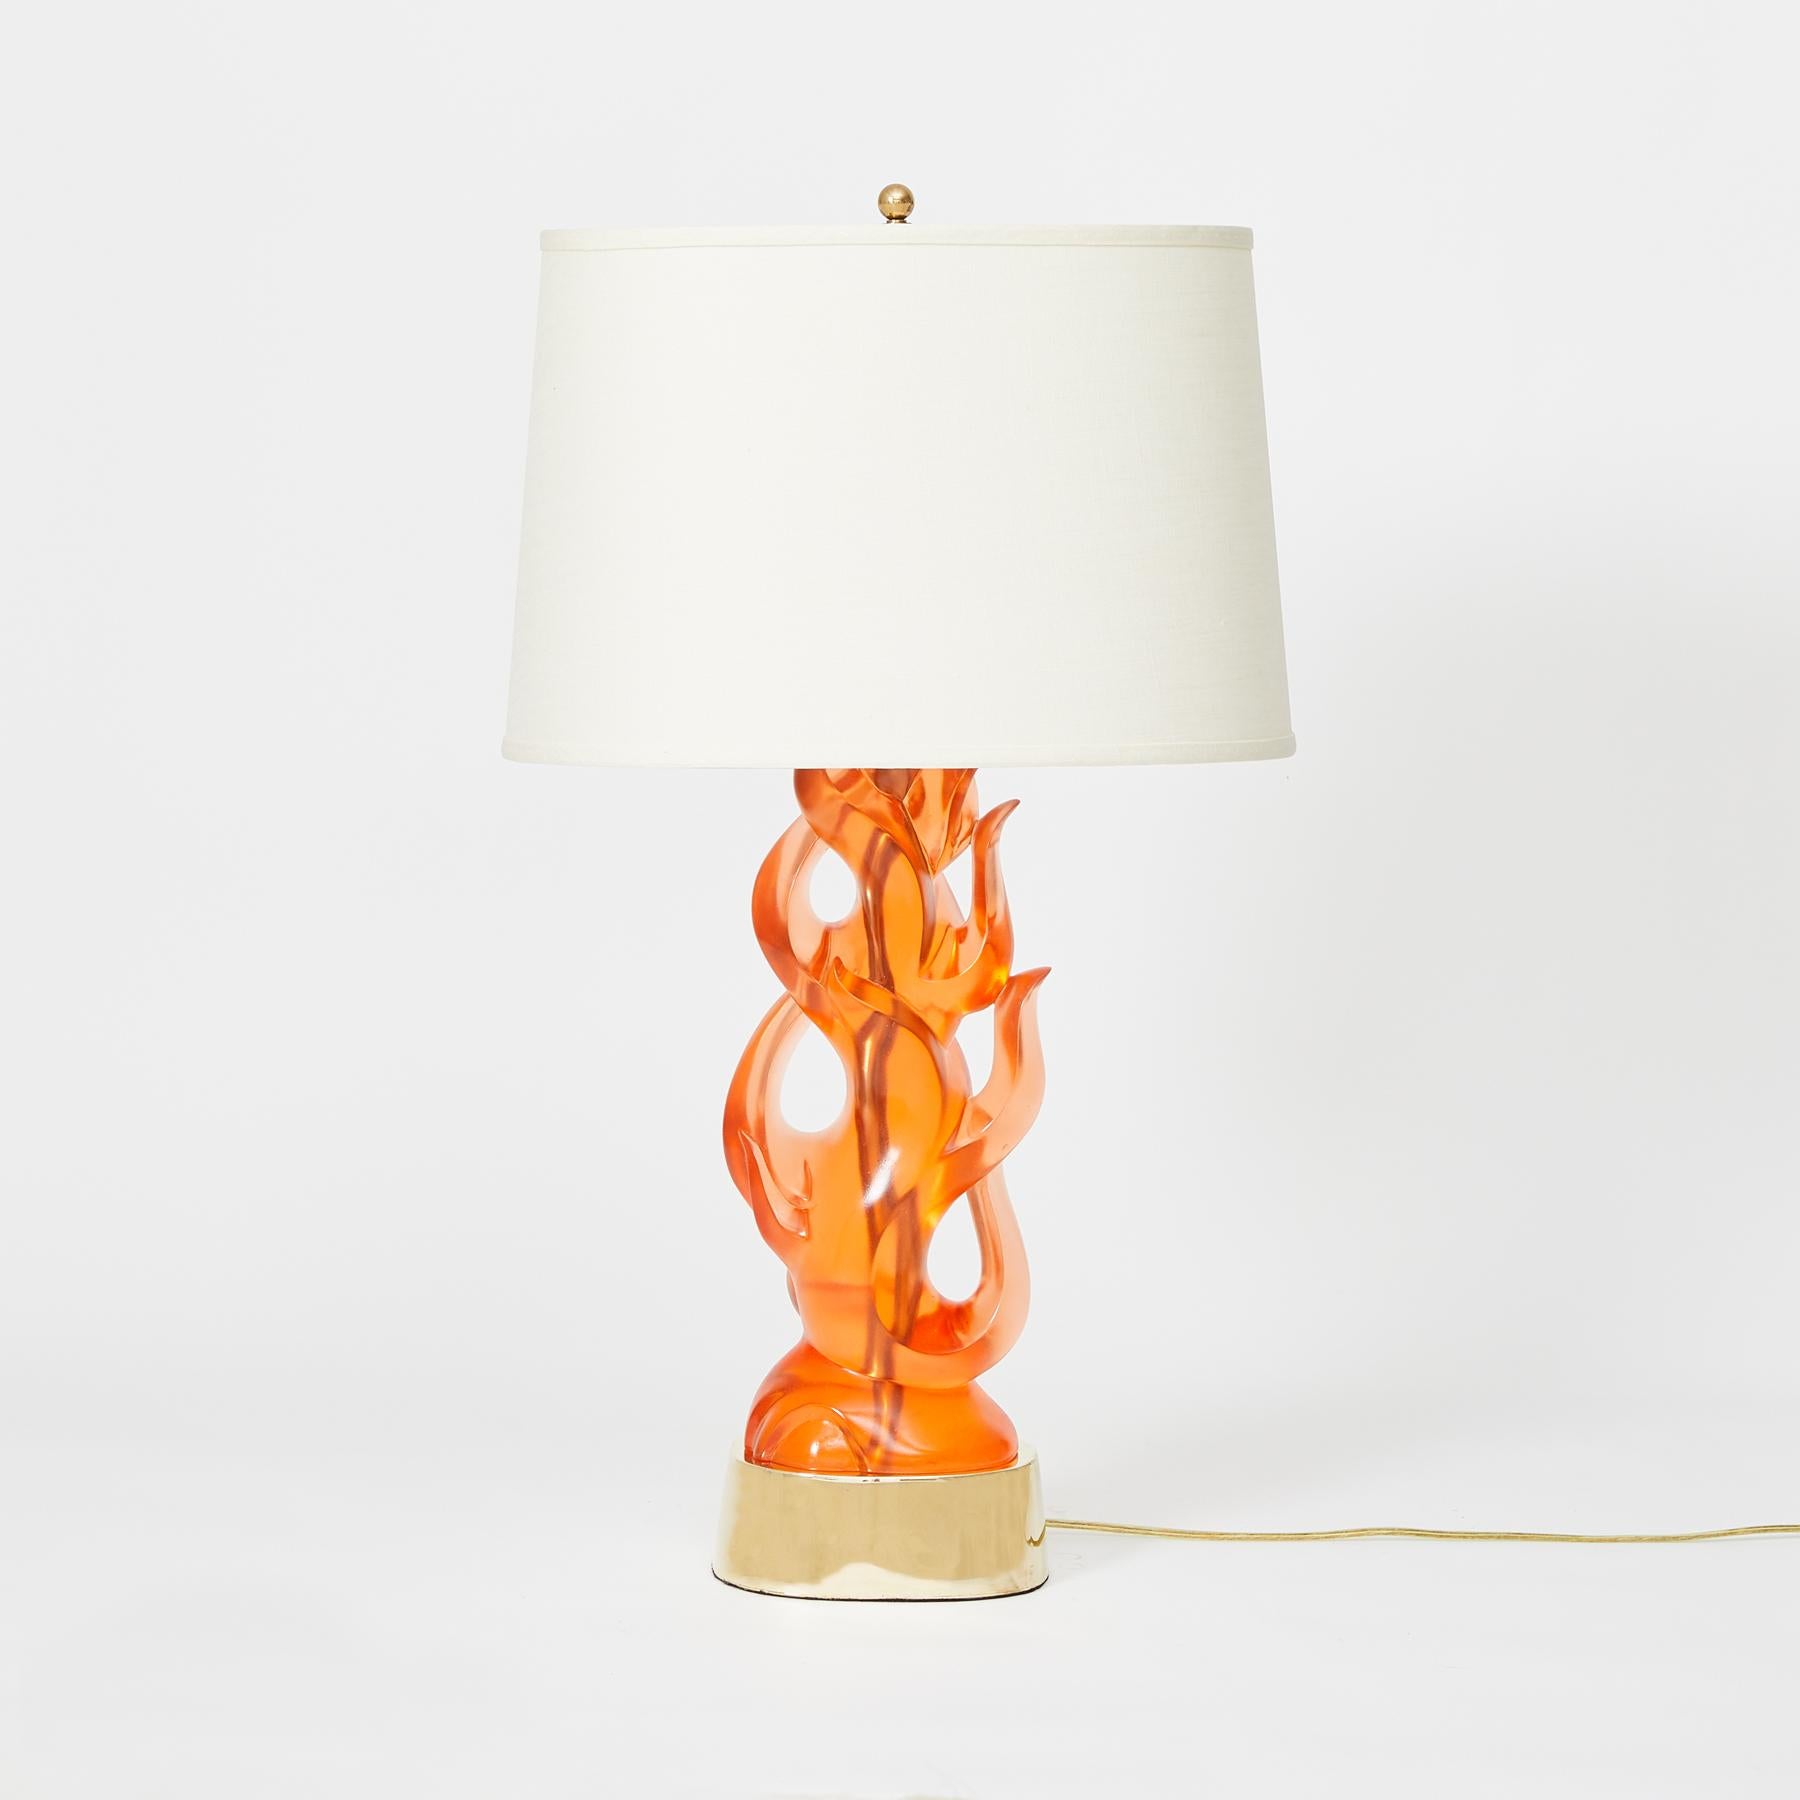 Ein Paar gegossene, mandarinenfarbene, transparente Harz-Tischlampen in Form einer Flamme. Der ovale Sockel hat ein symmetrisches, modernes Design, flammenförmige Elemente und offene Abschnitte.

Andere Farboptionen verfügbar. Der Preis gilt pro